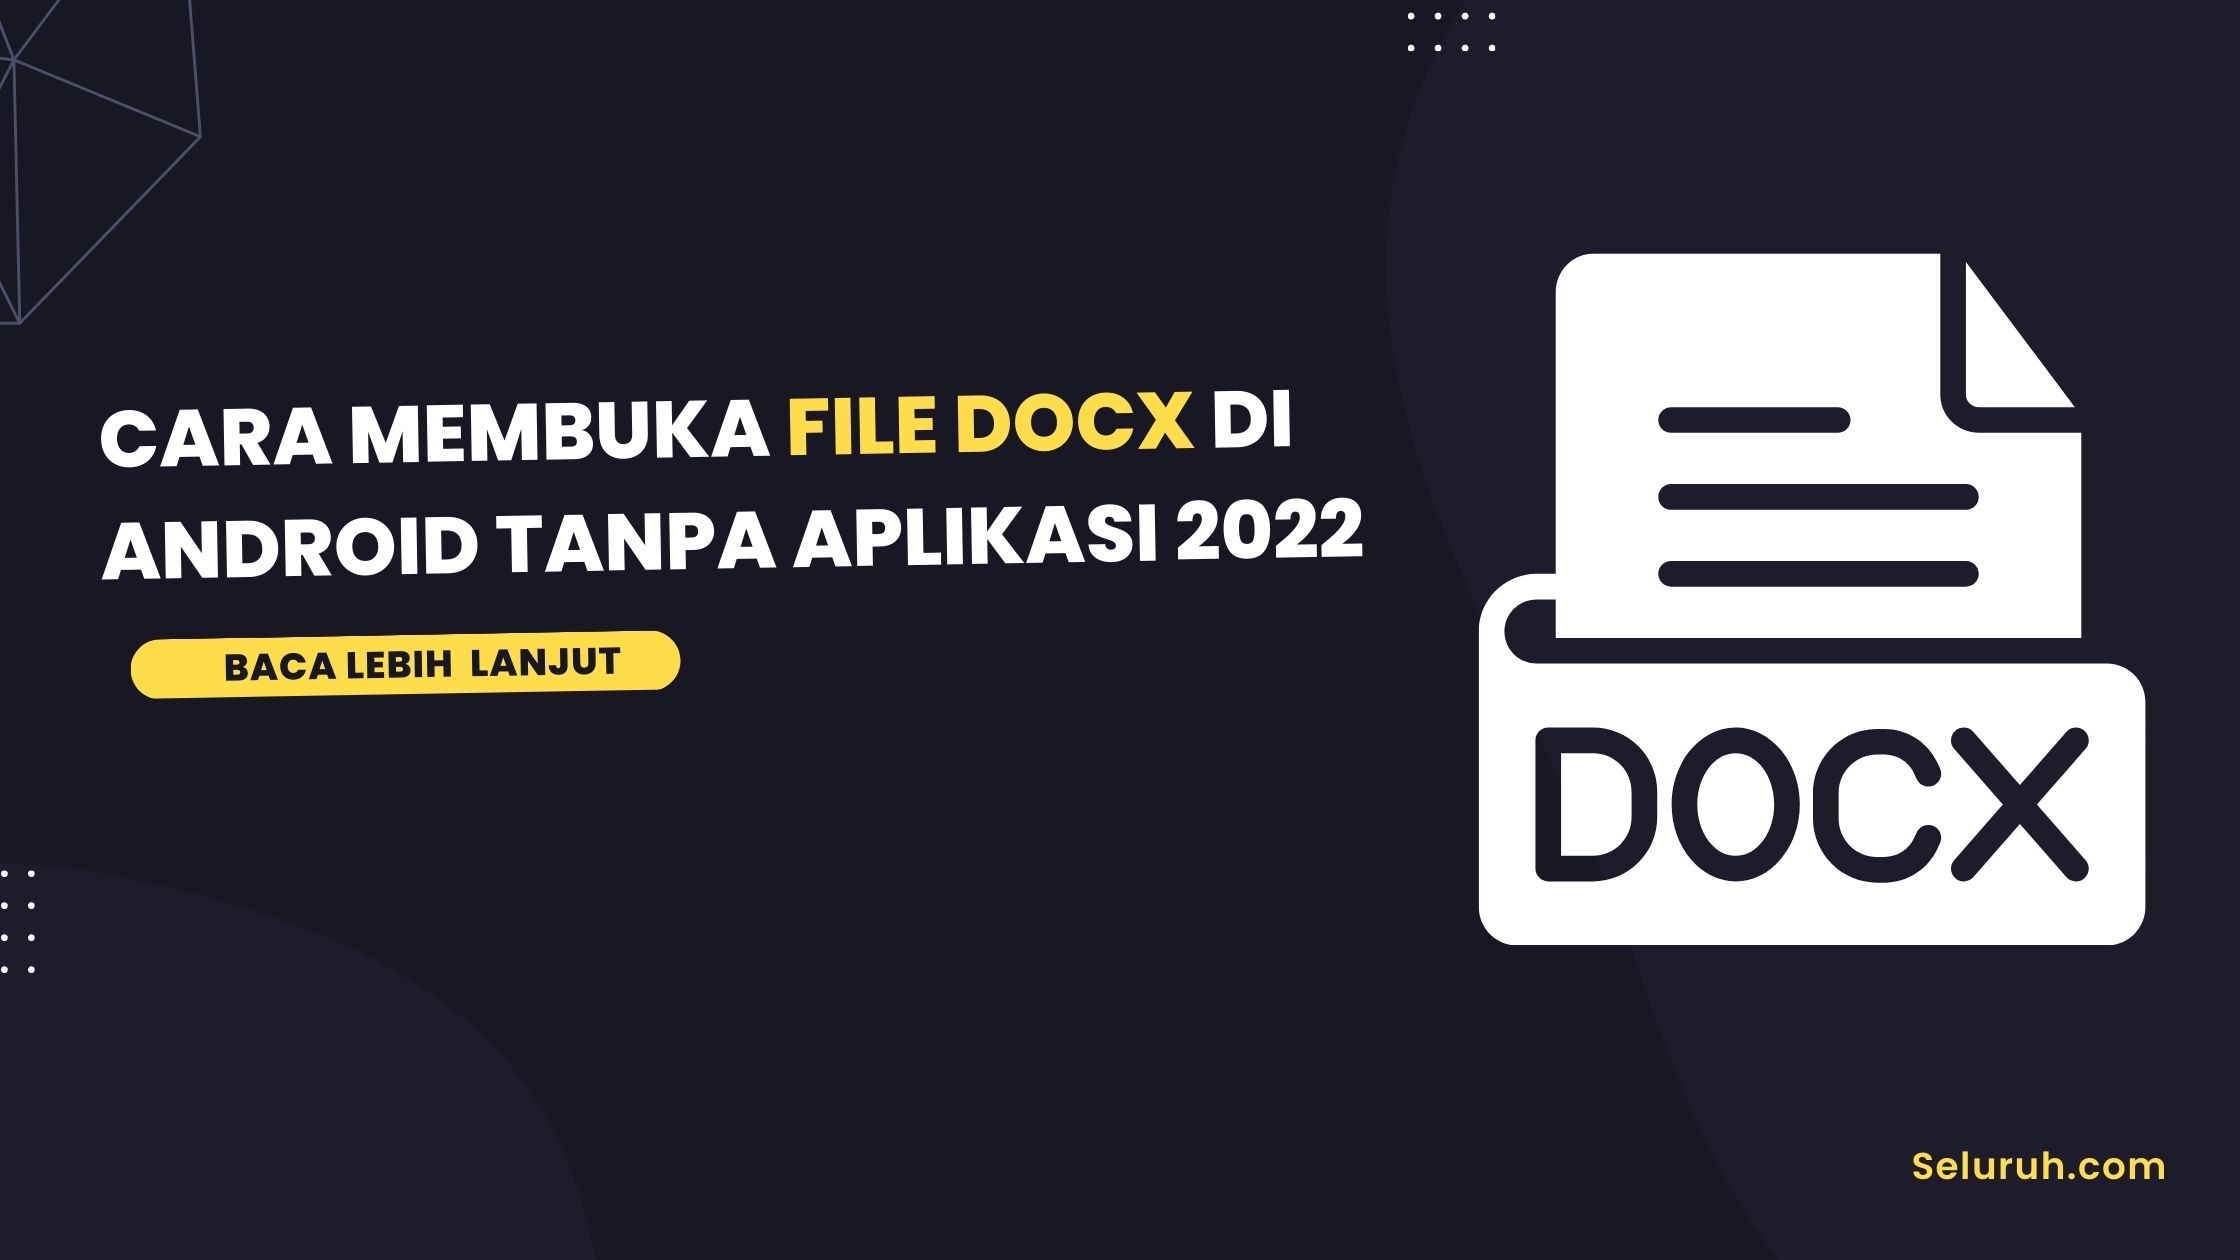 Cara membuka file docx